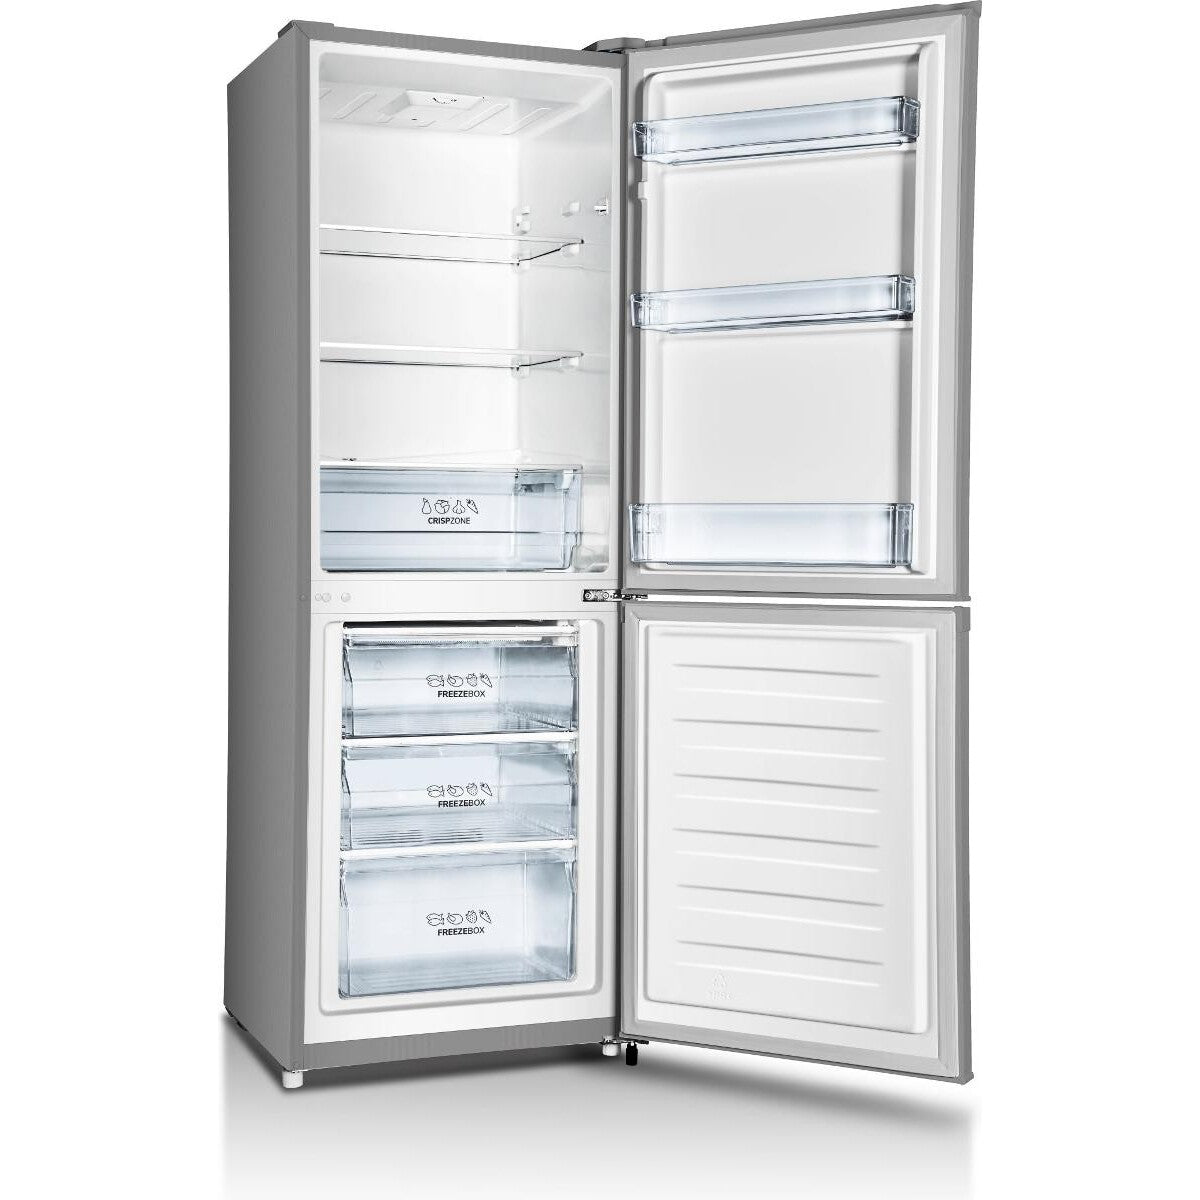 Kombinovaná chladnička s mrazničkou dole Gorenje RK416DPS4